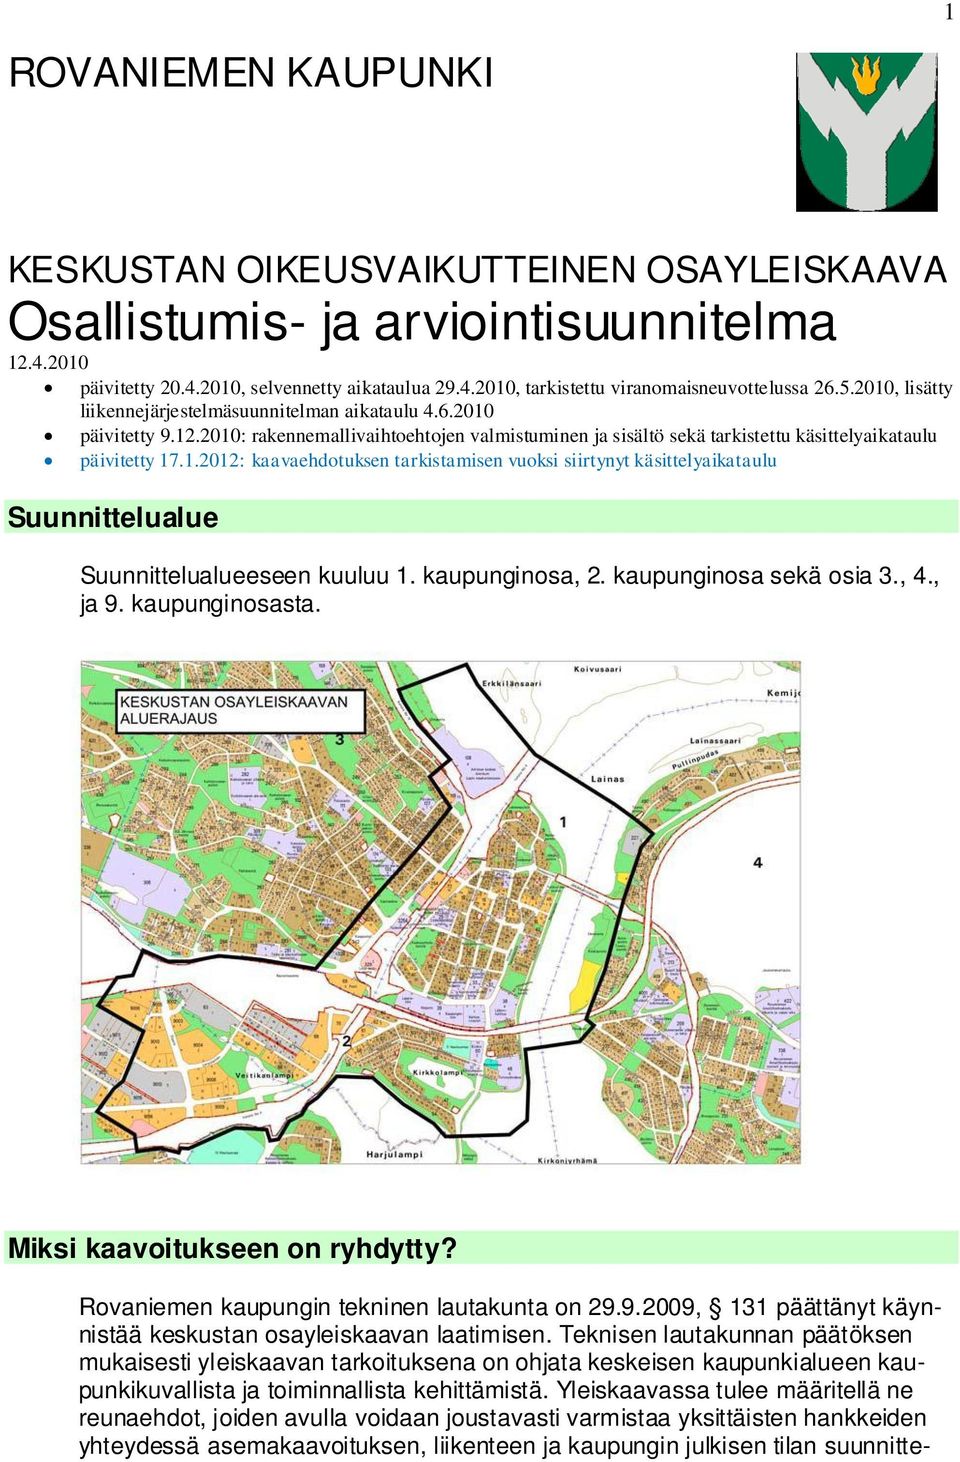 kaupunginosa, 2. kaupunginosa sekä osia 3., 4., ja 9. kaupunginosasta. Miksi kaavoitukseen on ryhdytty? Rovaniemen kaupungin tekninen lautakunta on 29.9.2009, 131 päättänyt käynnistää keskustan osayleiskaavan laatimisen.